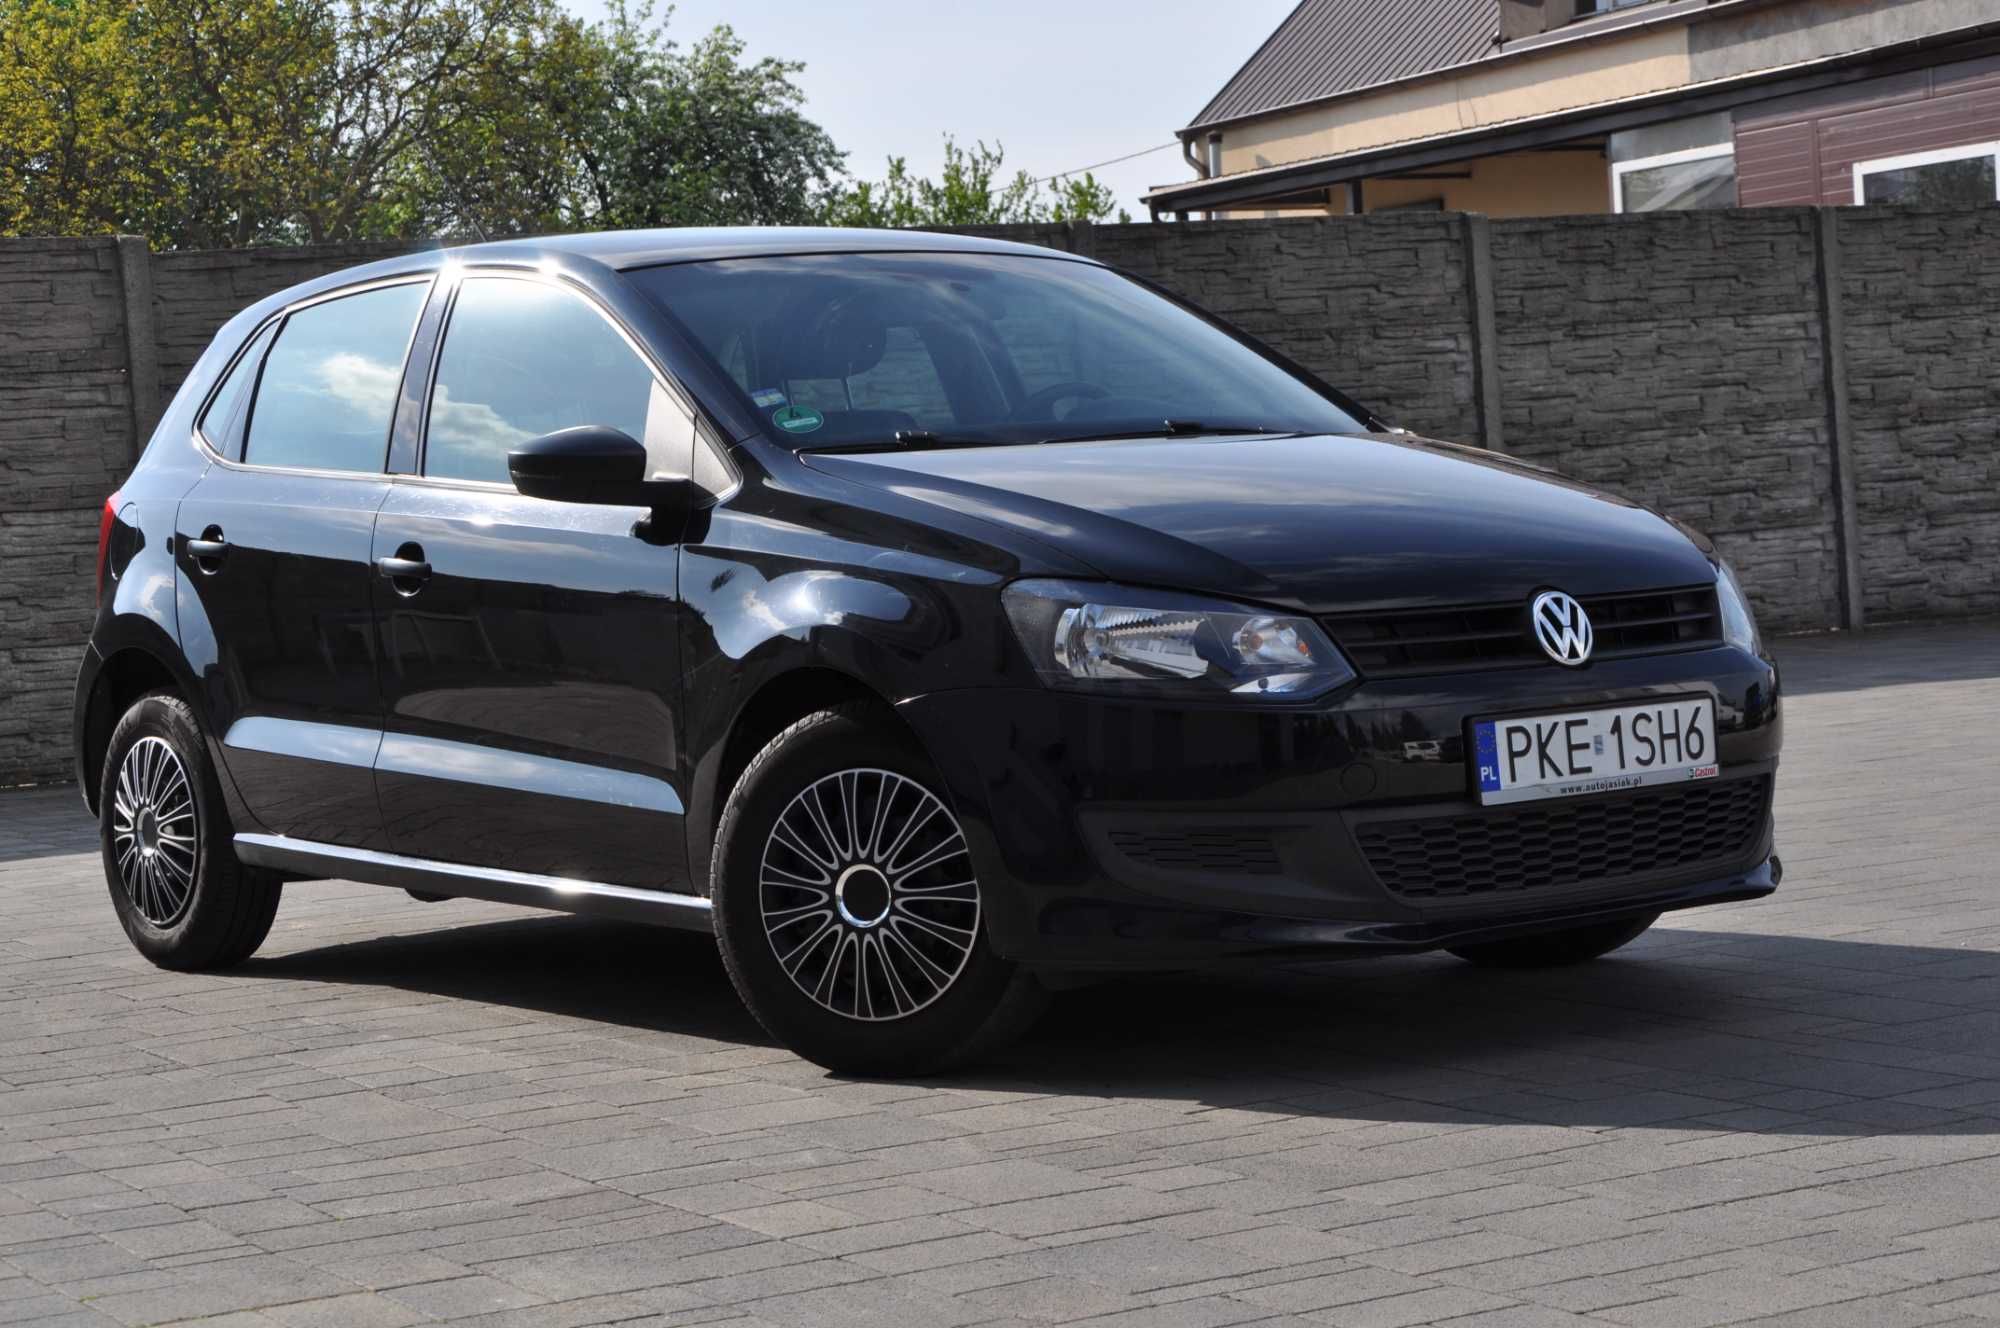 Volkswagen VW Polo rok 2011 przebieg 171 tys. silnik 1.2